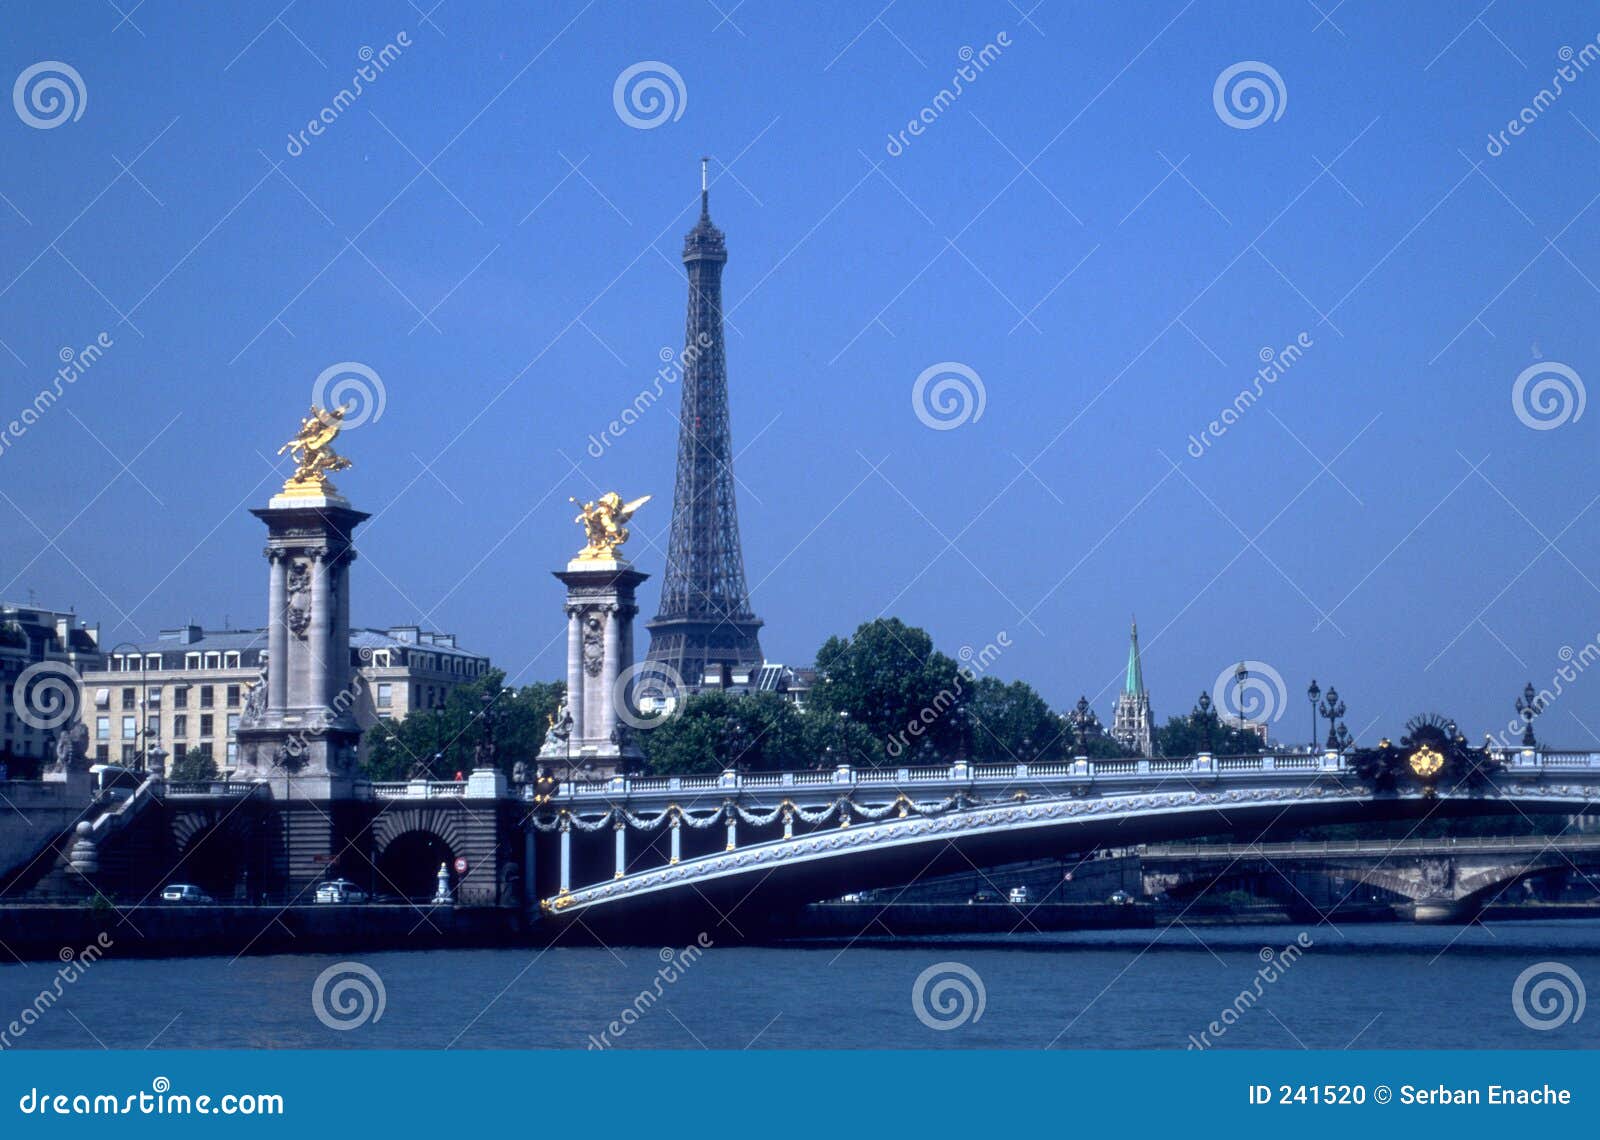 Mosty na wieżę Eiffel sekwany. 50 300 świętowania 1789 Eiffel wystawy filmie francuski metrów rewolucji velvia łodzie 1889 budowanych ziarna posiadanych duńskich strzelców na wyższy basztowych lusterka widocznych był światu.